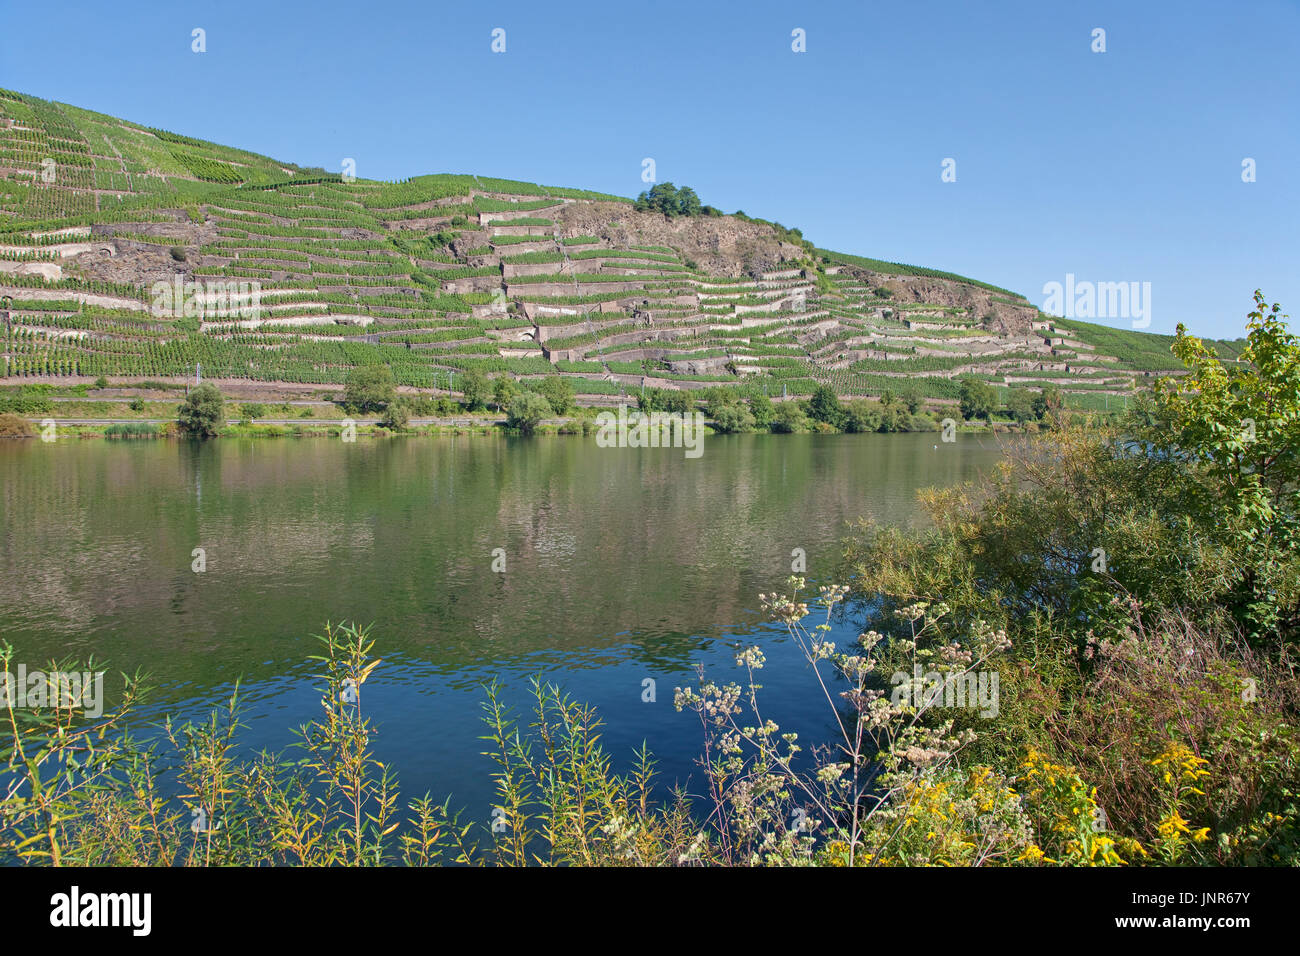 Terrassenmosel, Untermosel, Landkreis Mayen-Koblenz, Rheinland-Pfalz, Deutschland, Europa | vin terrasse, Moselle, Allemagne Banque D'Images